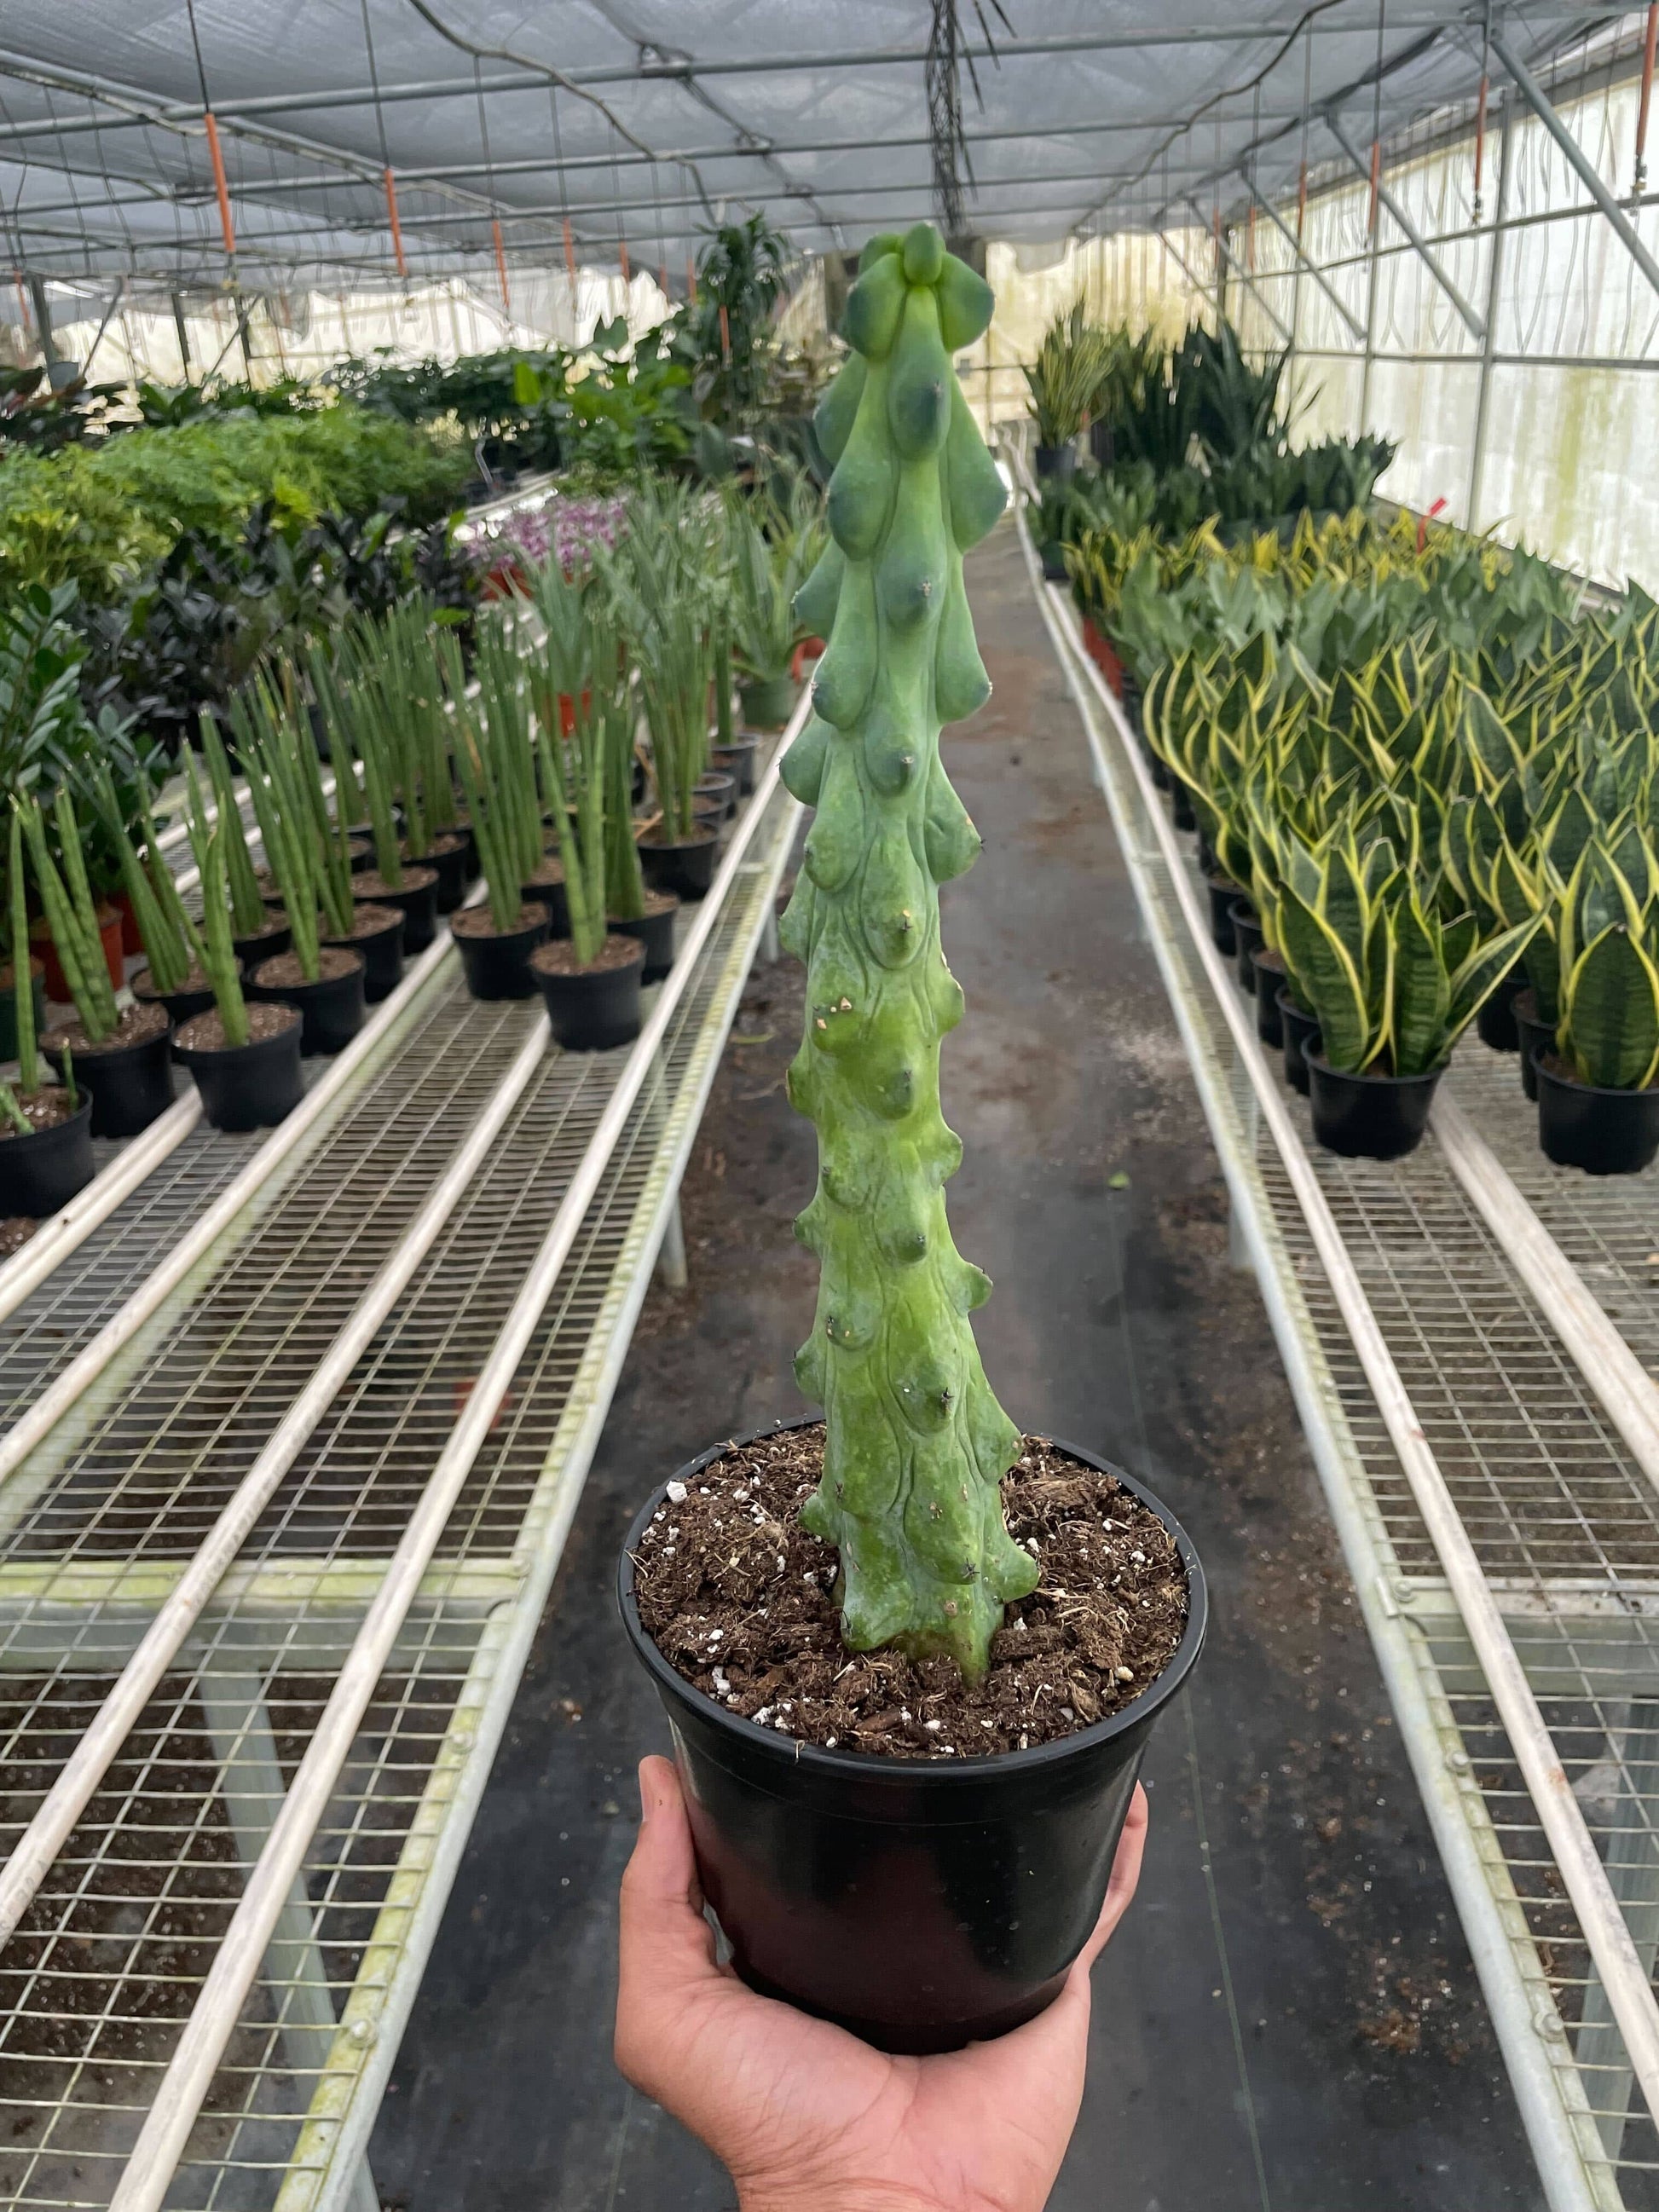 Boobie Cactus - Plantonio